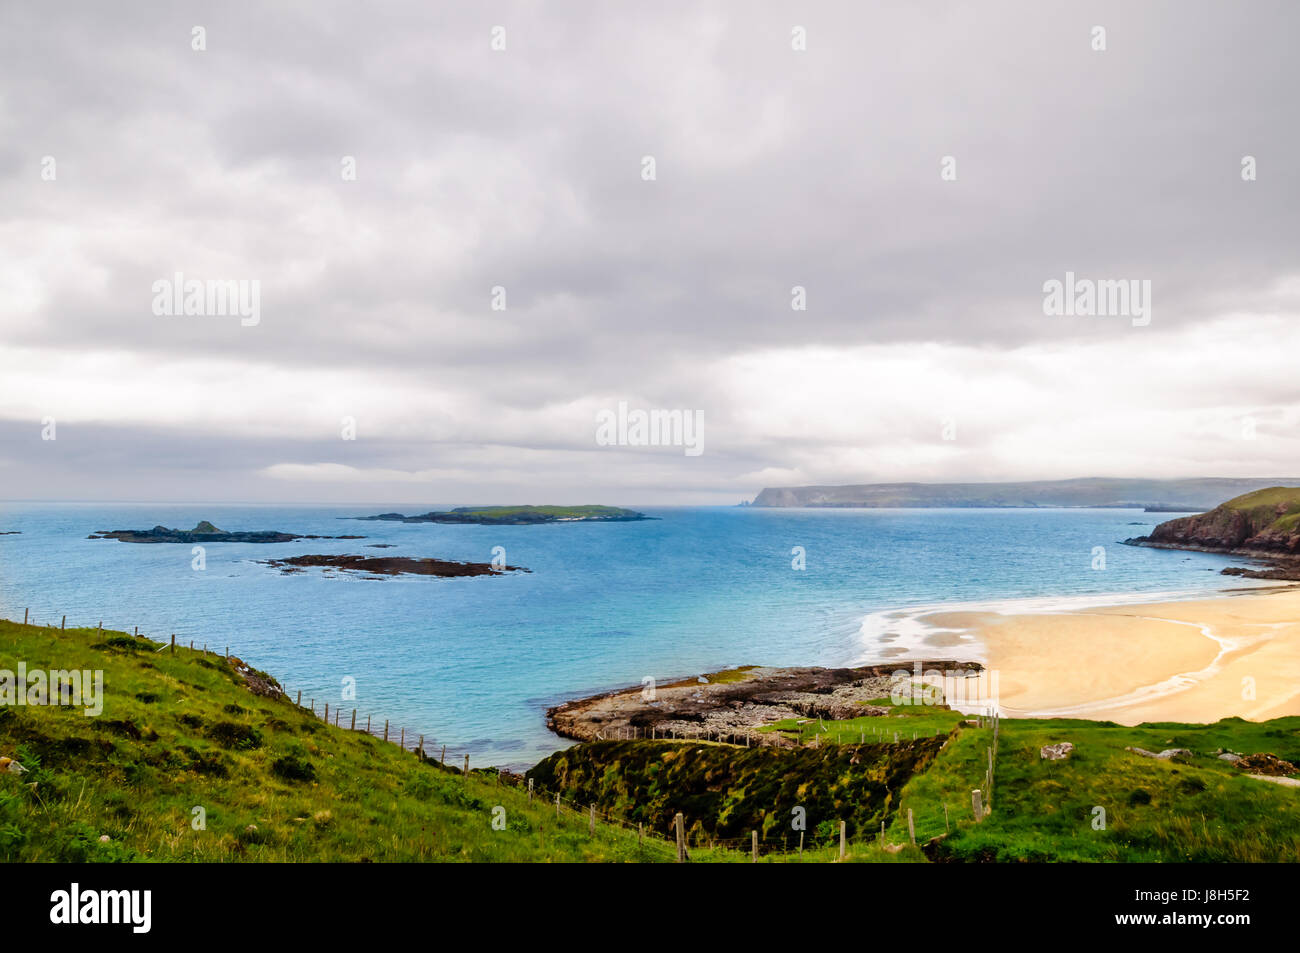 Vista sobre la playa y costa en el norte de Escocia. Foto de stock